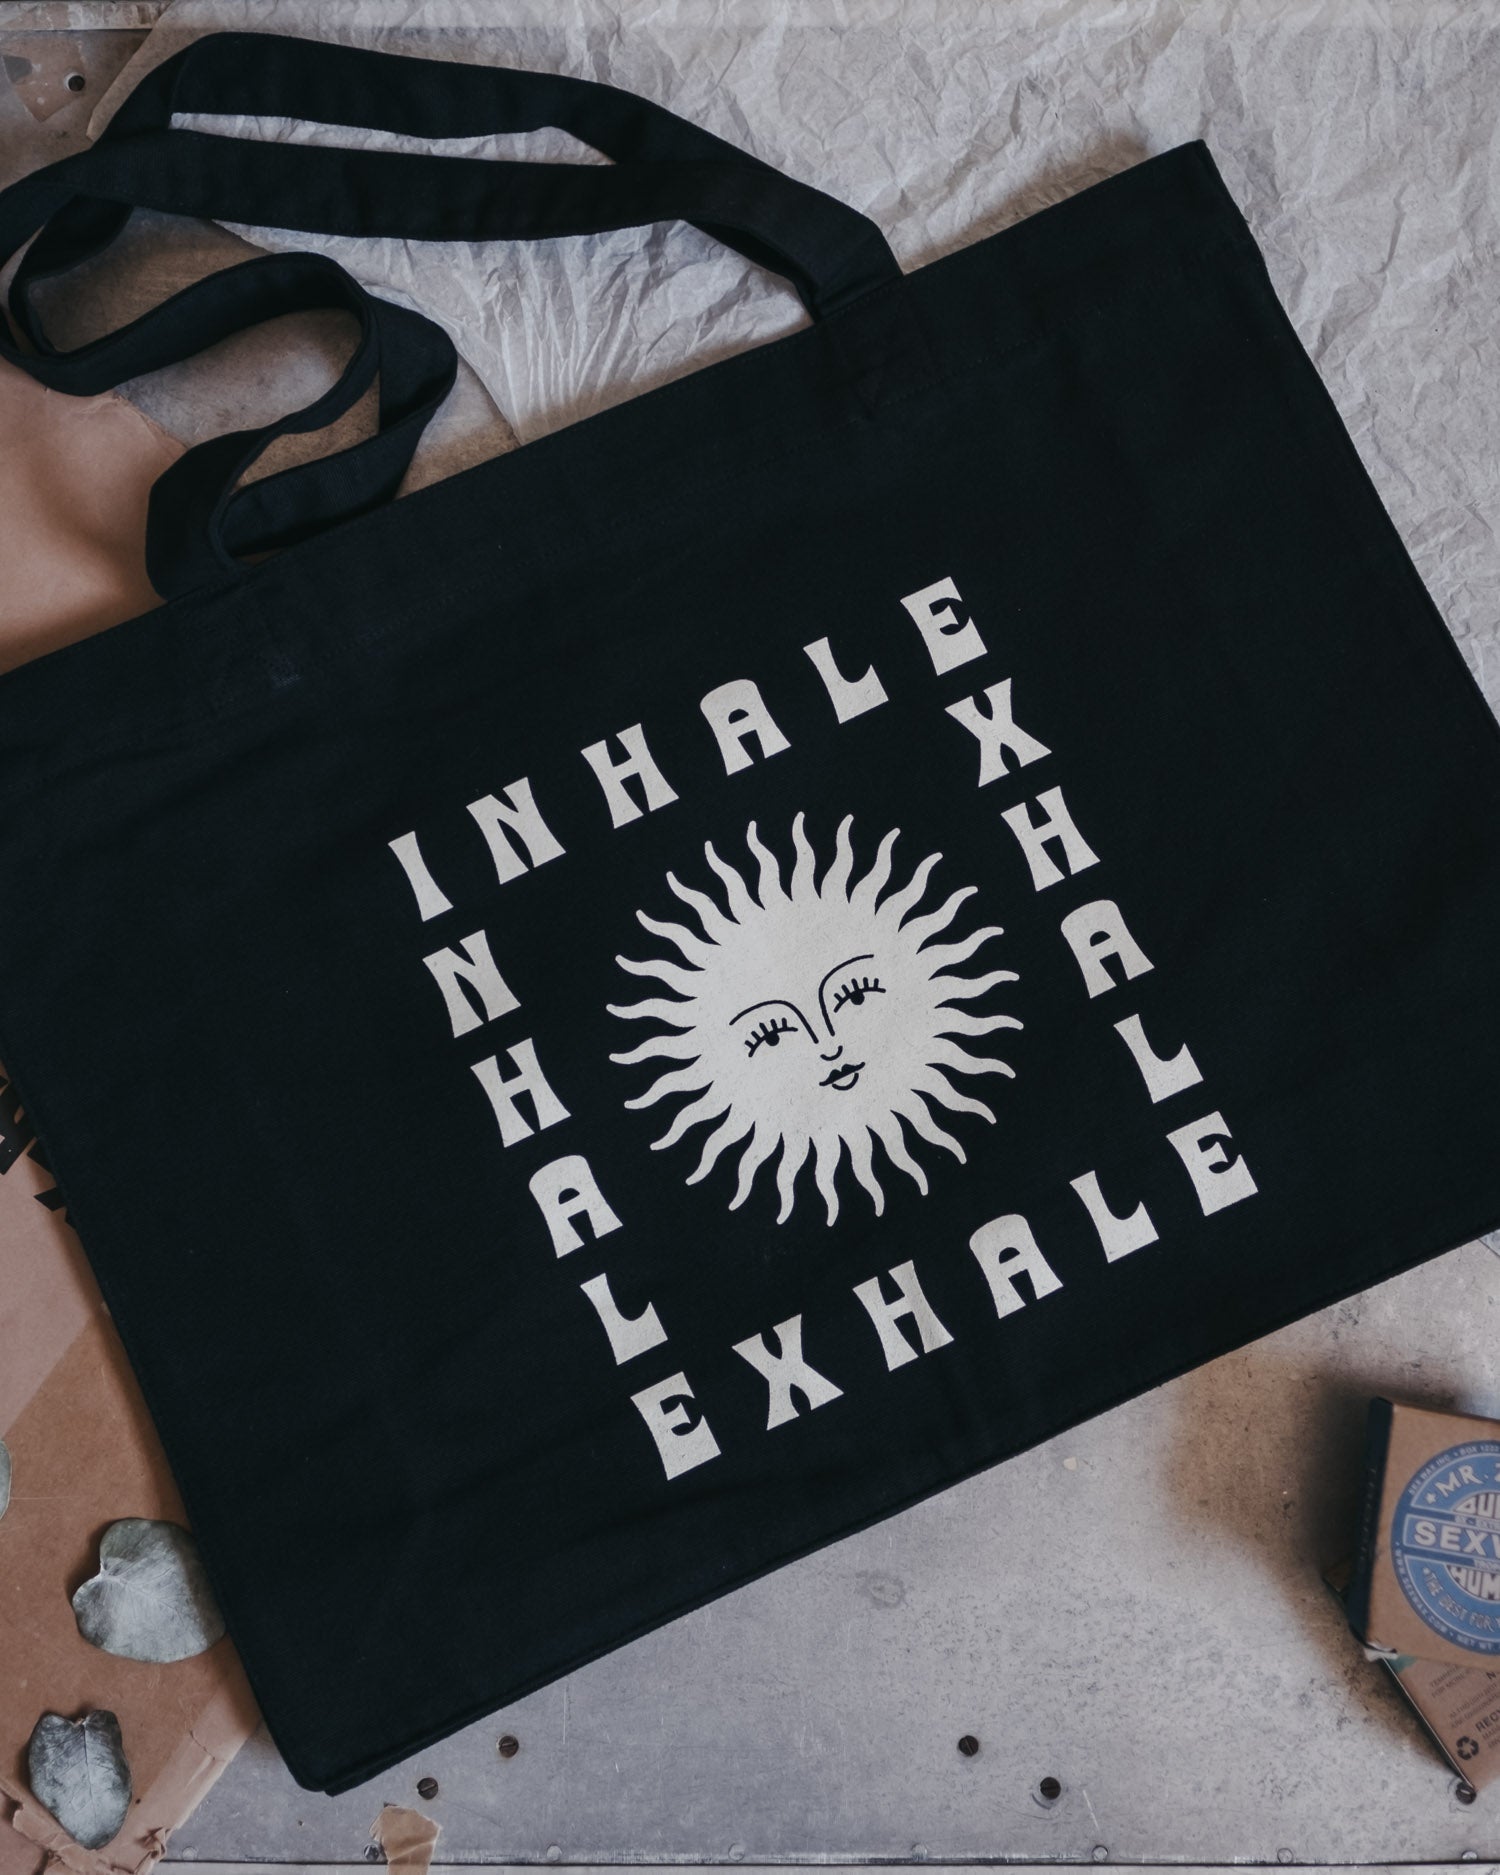 Inhale Exhale Shopper Bag by ART DISCO Original Goods